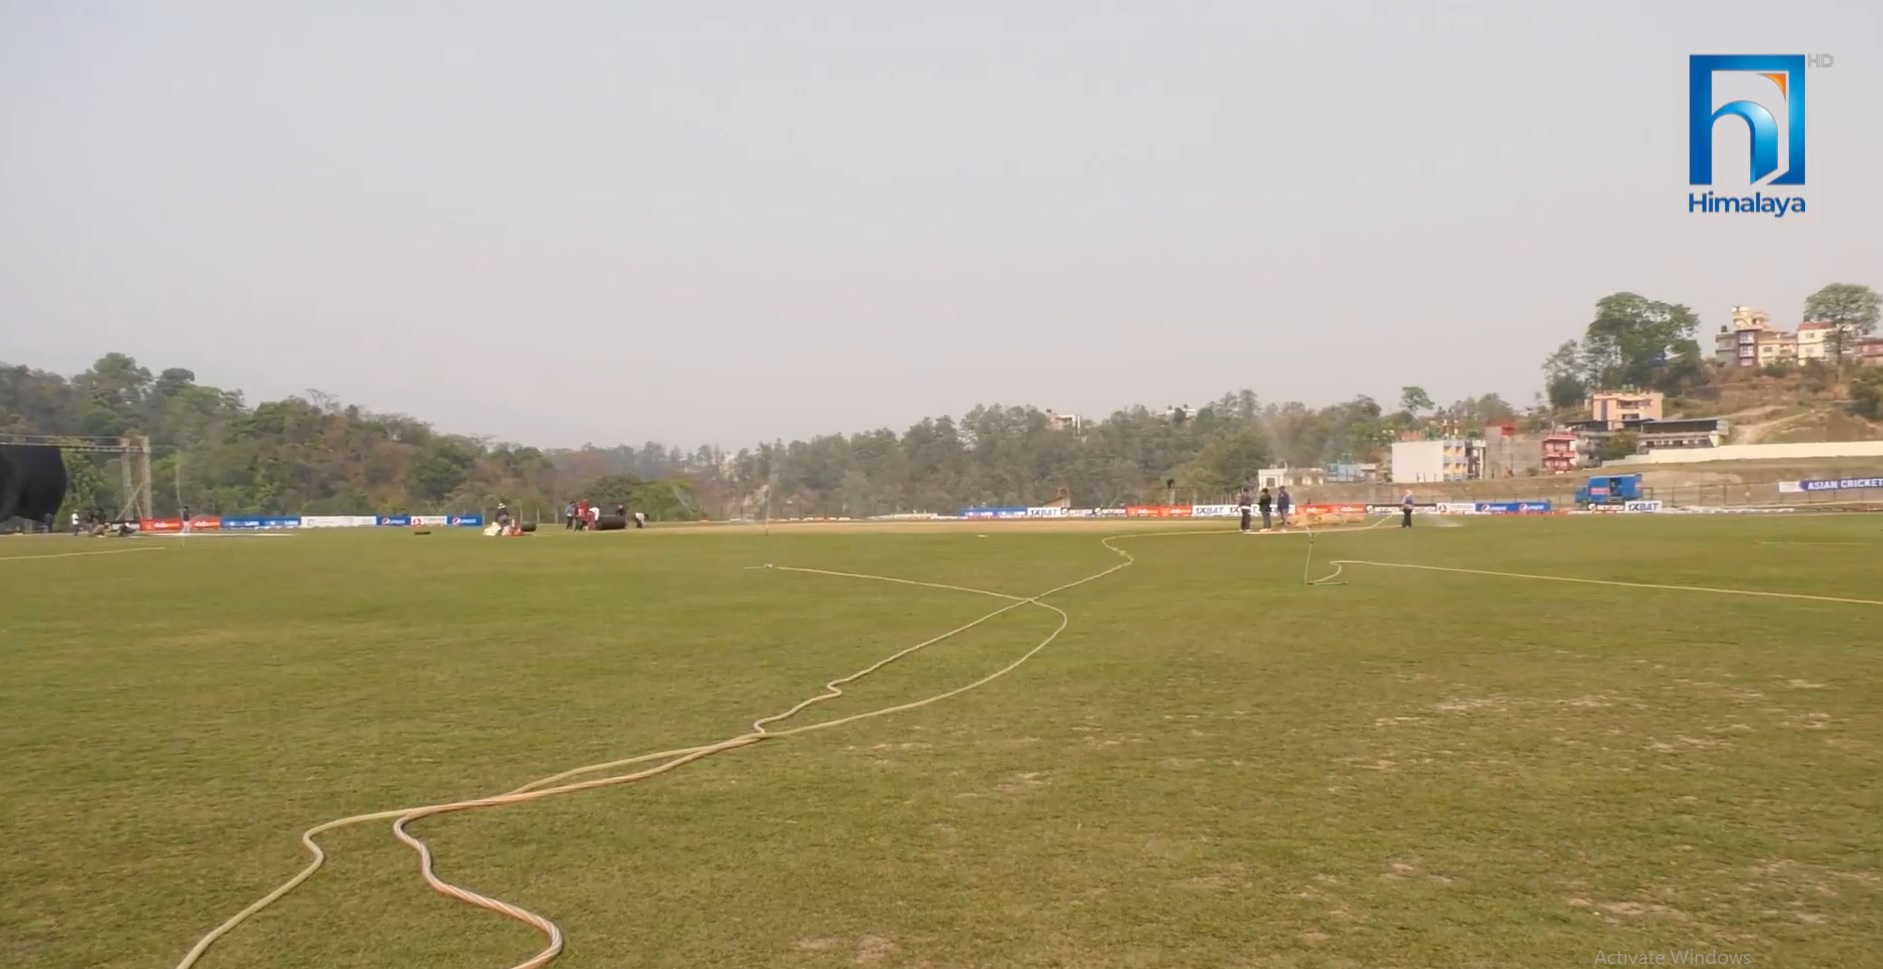 जब मुलपानी क्रिकेट मैदानमा पहिलो अन्तर्राष्ट्रिय खेल भयो… (भिडियो रिपोर्टसहित)